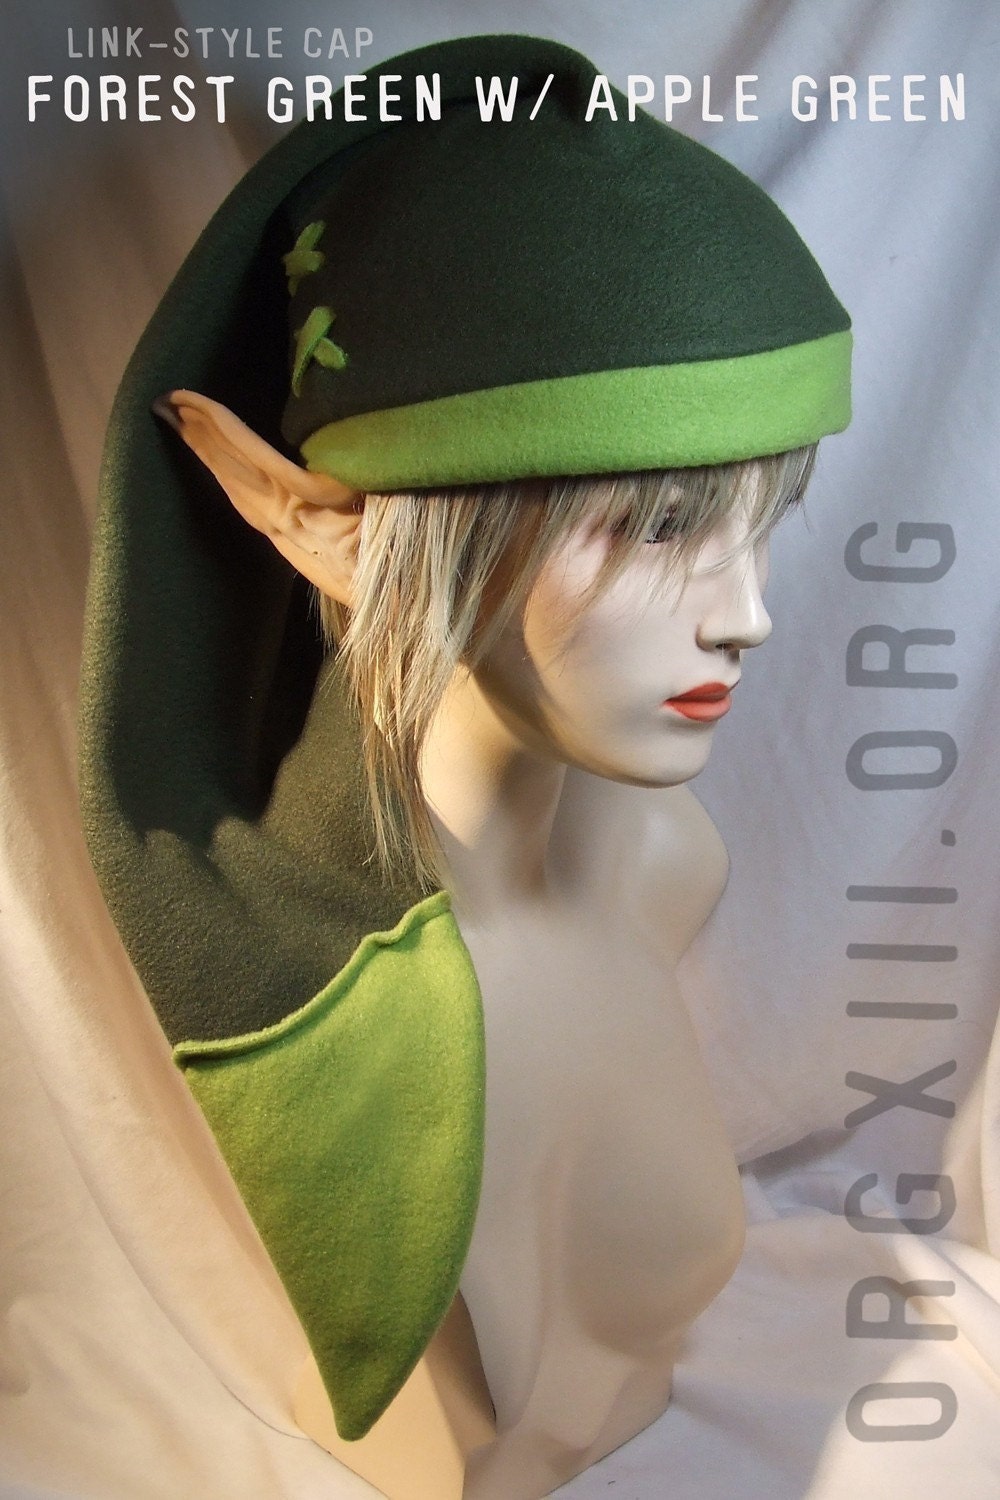 Legend of Zelda - Link cosplay cap in Kokiri green ( forest/apple ) - hats by orgXIIIorg